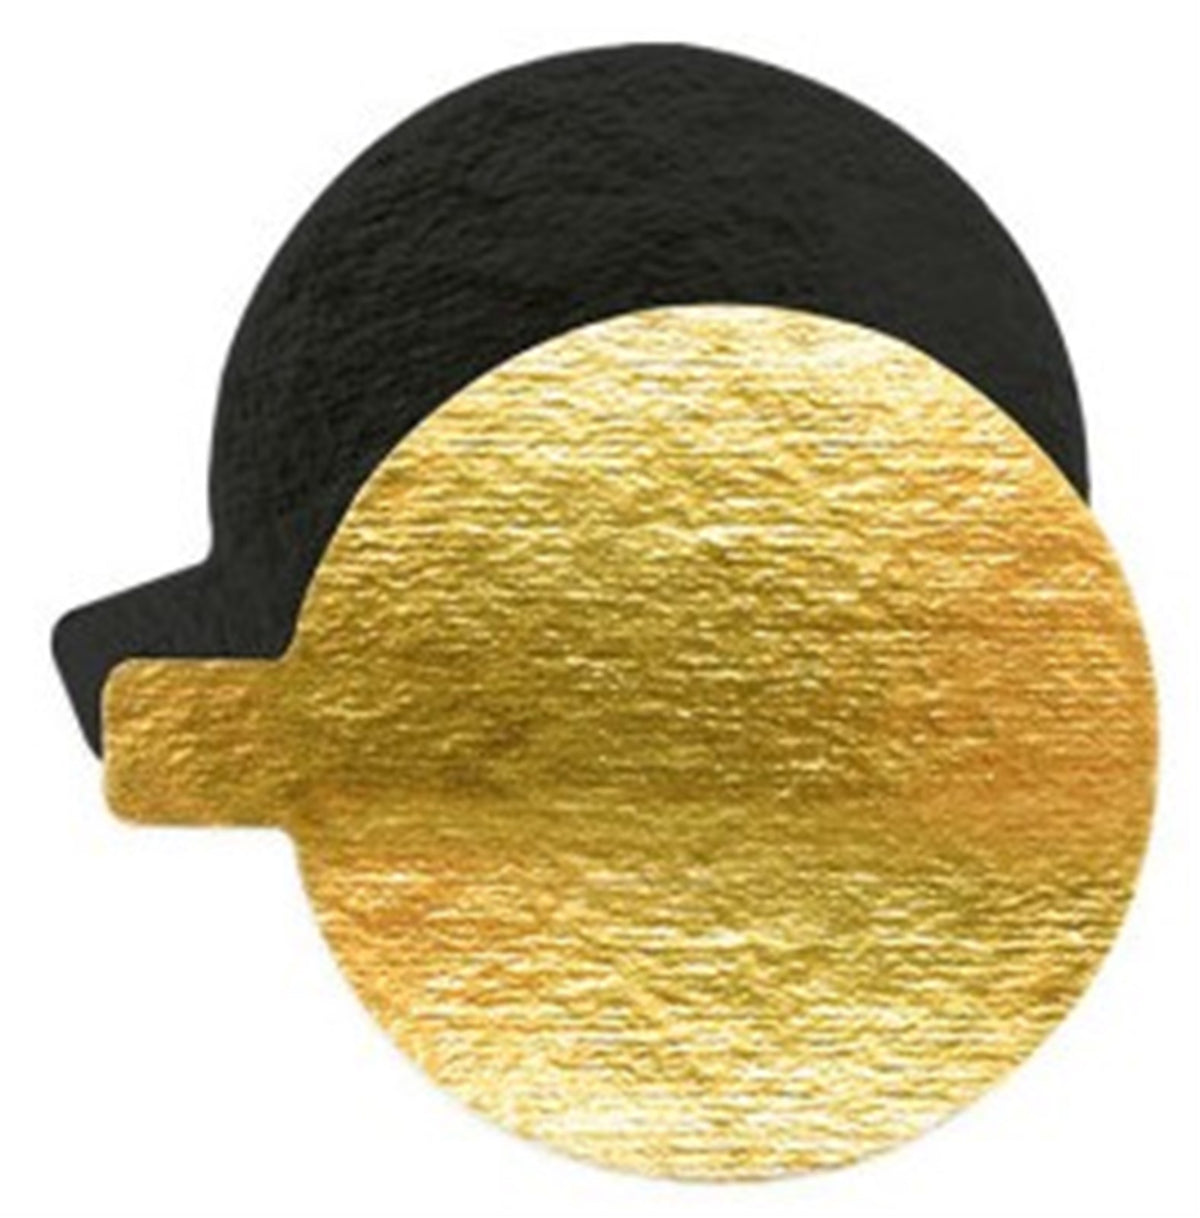 10er Set Tortenhalter gold/schwarz rund 8cm in Gold/Schwarz präsentiert im Onlineshop von KAQTU Design AG. Platte ist von Scrap Cooking